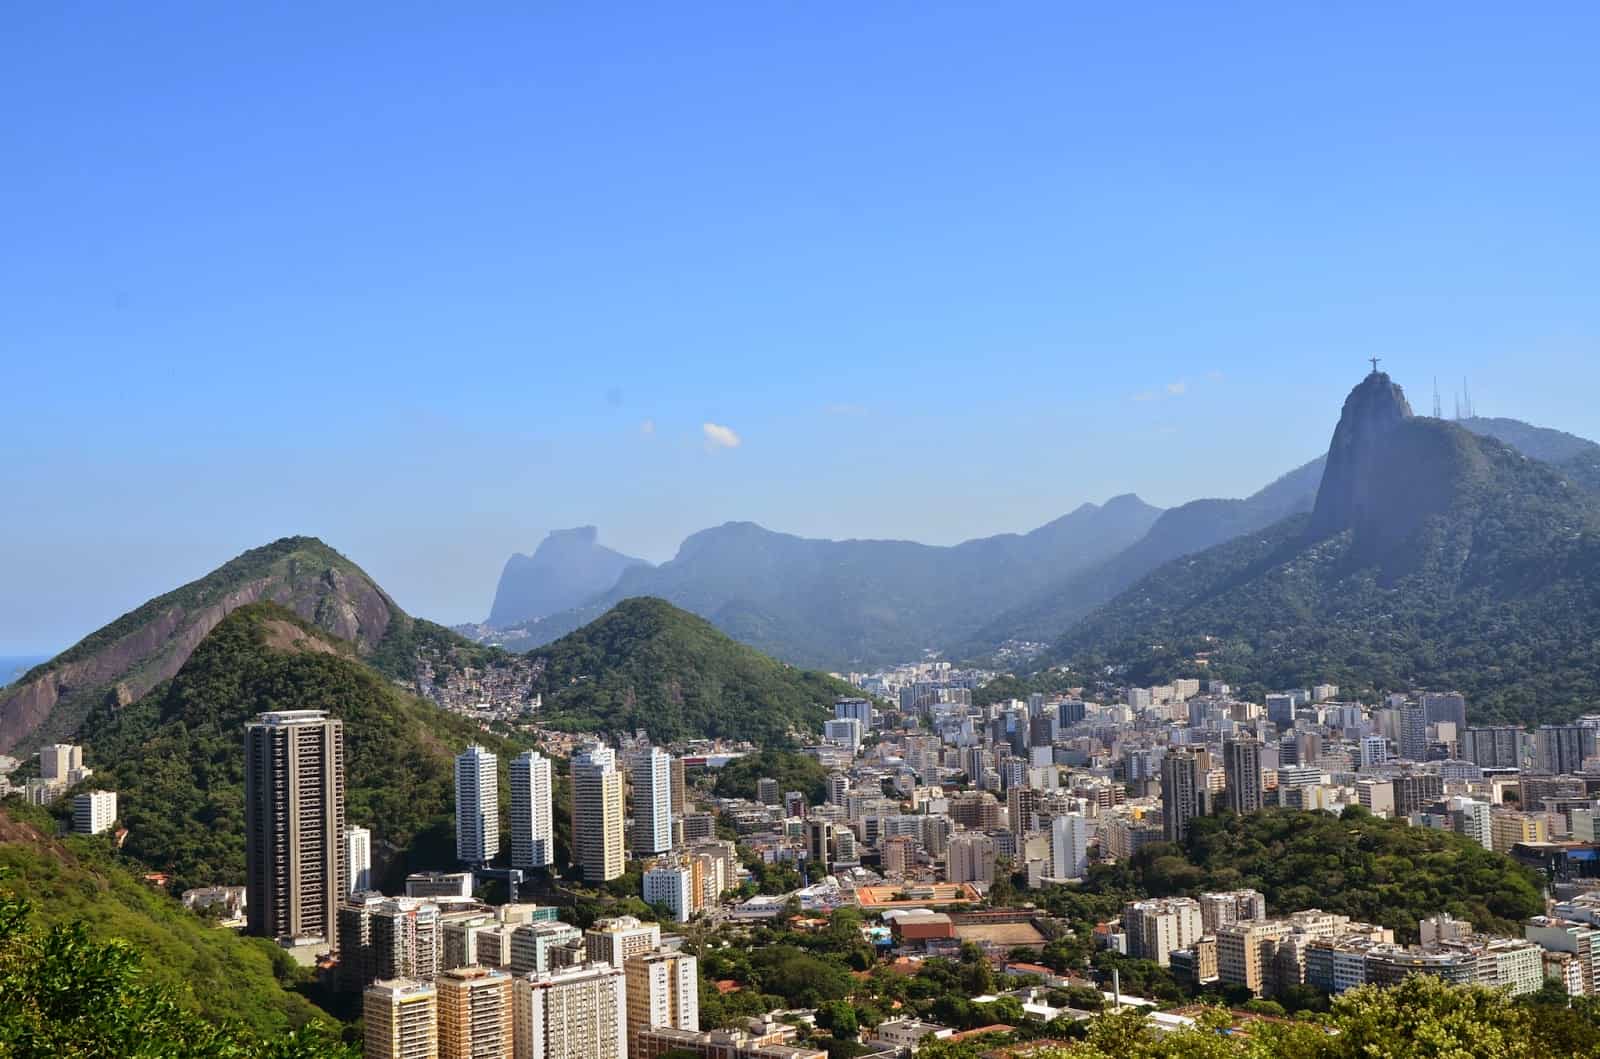 The view from Morro da Urca in Rio de Janeiro, Brazil